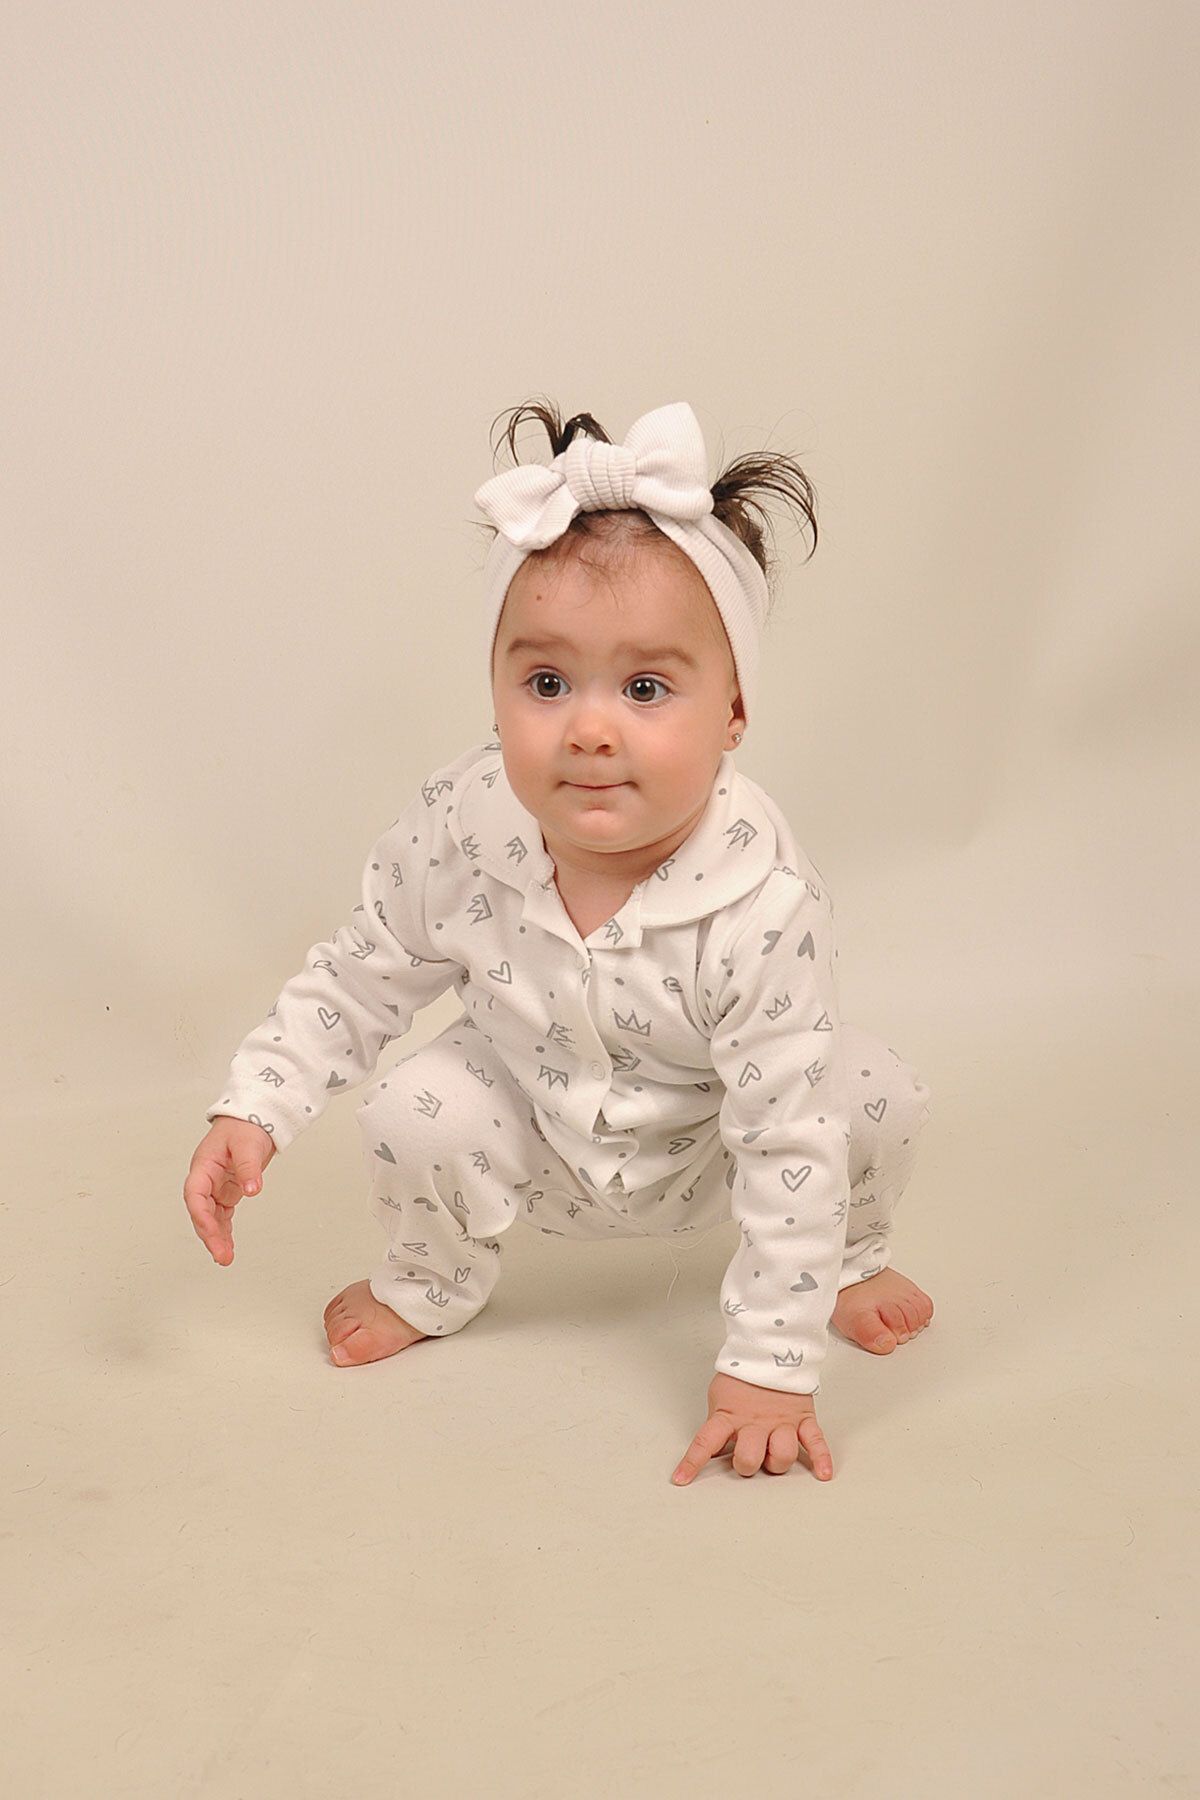 Peki Çocuk 5 Al 4 Öde Bebek Yumusacık Pamuk Kalp Taç Desenli Önden Çitçitli Bebe Yaka Pijama Takim 14474